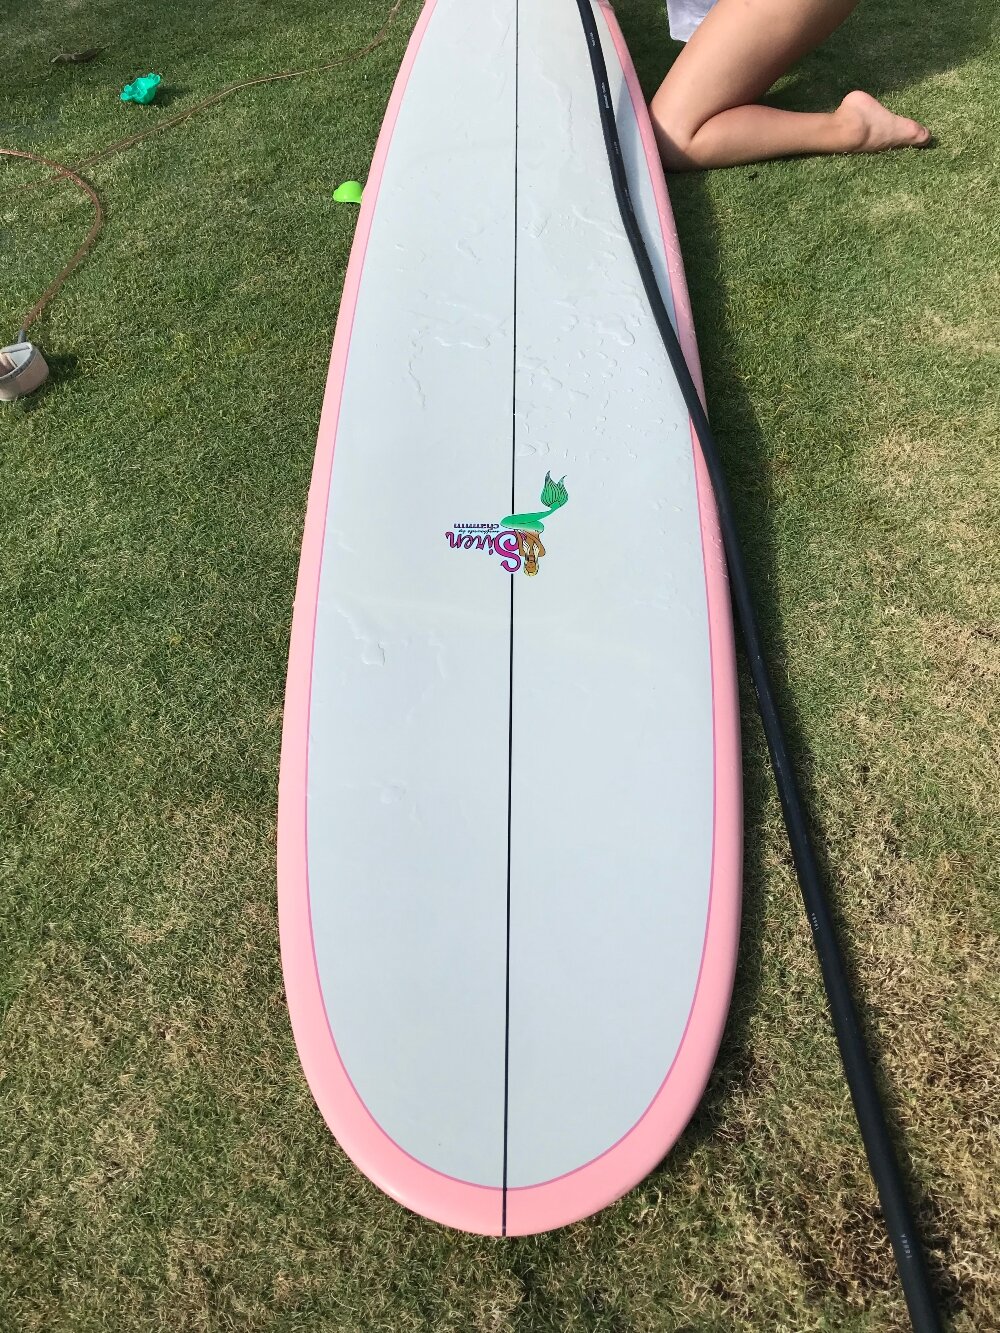 Moms-Goop-cleans-surfboards-hawaii-08.jpg